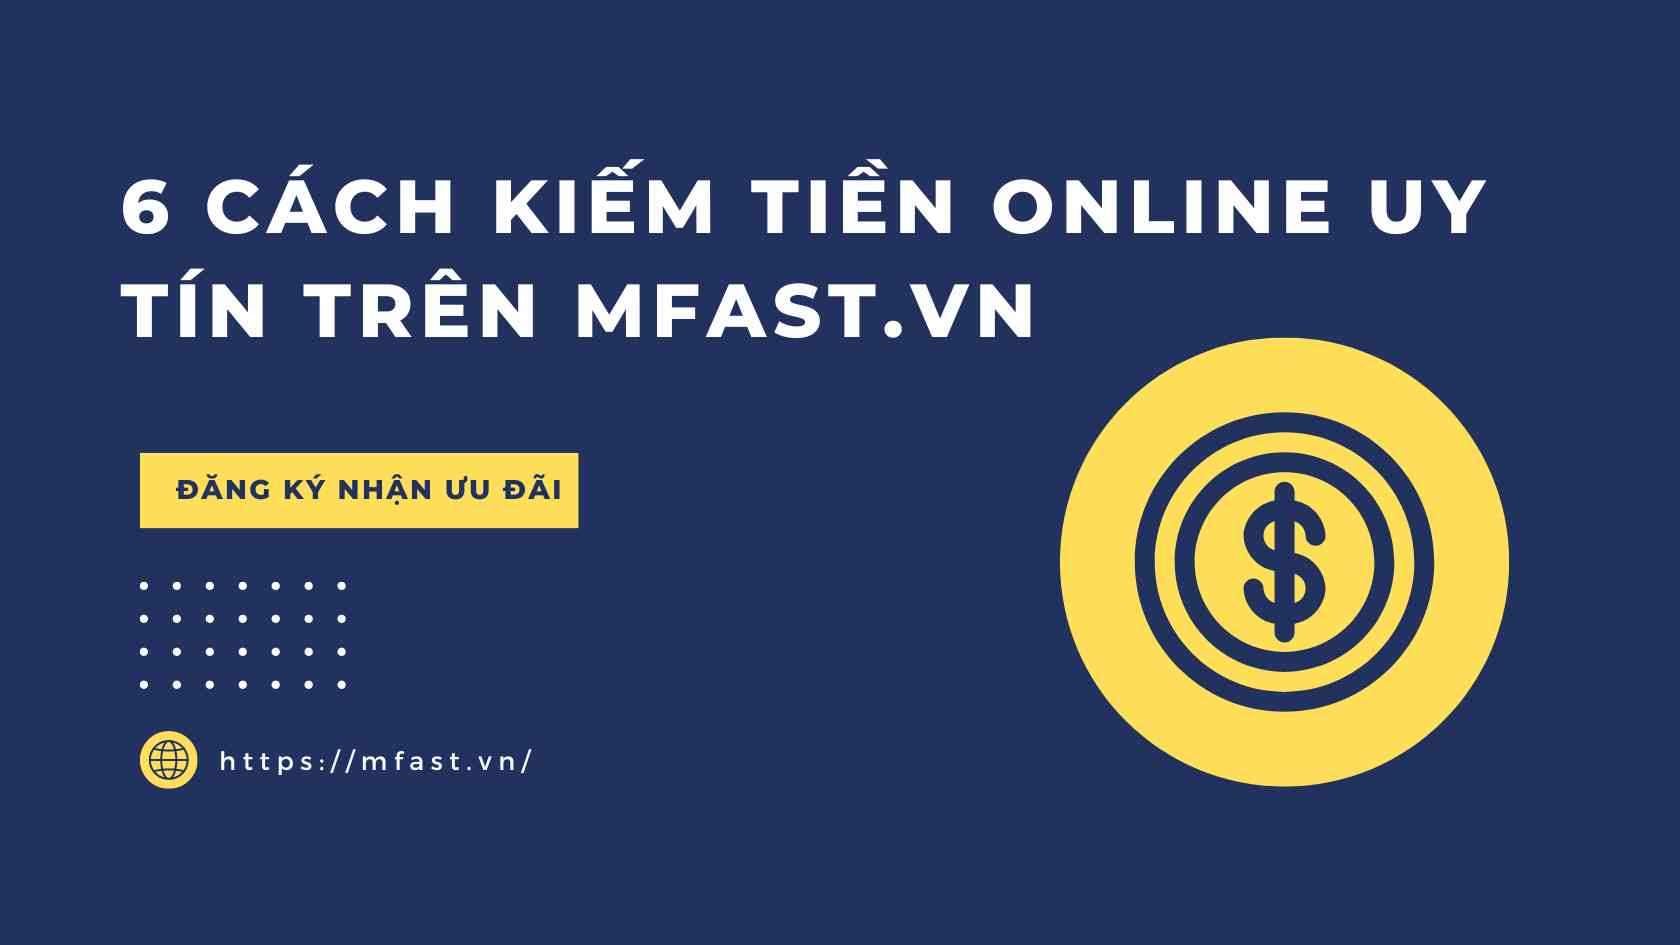 6 cách kiếm tiền online uy tín trên mFast.vn